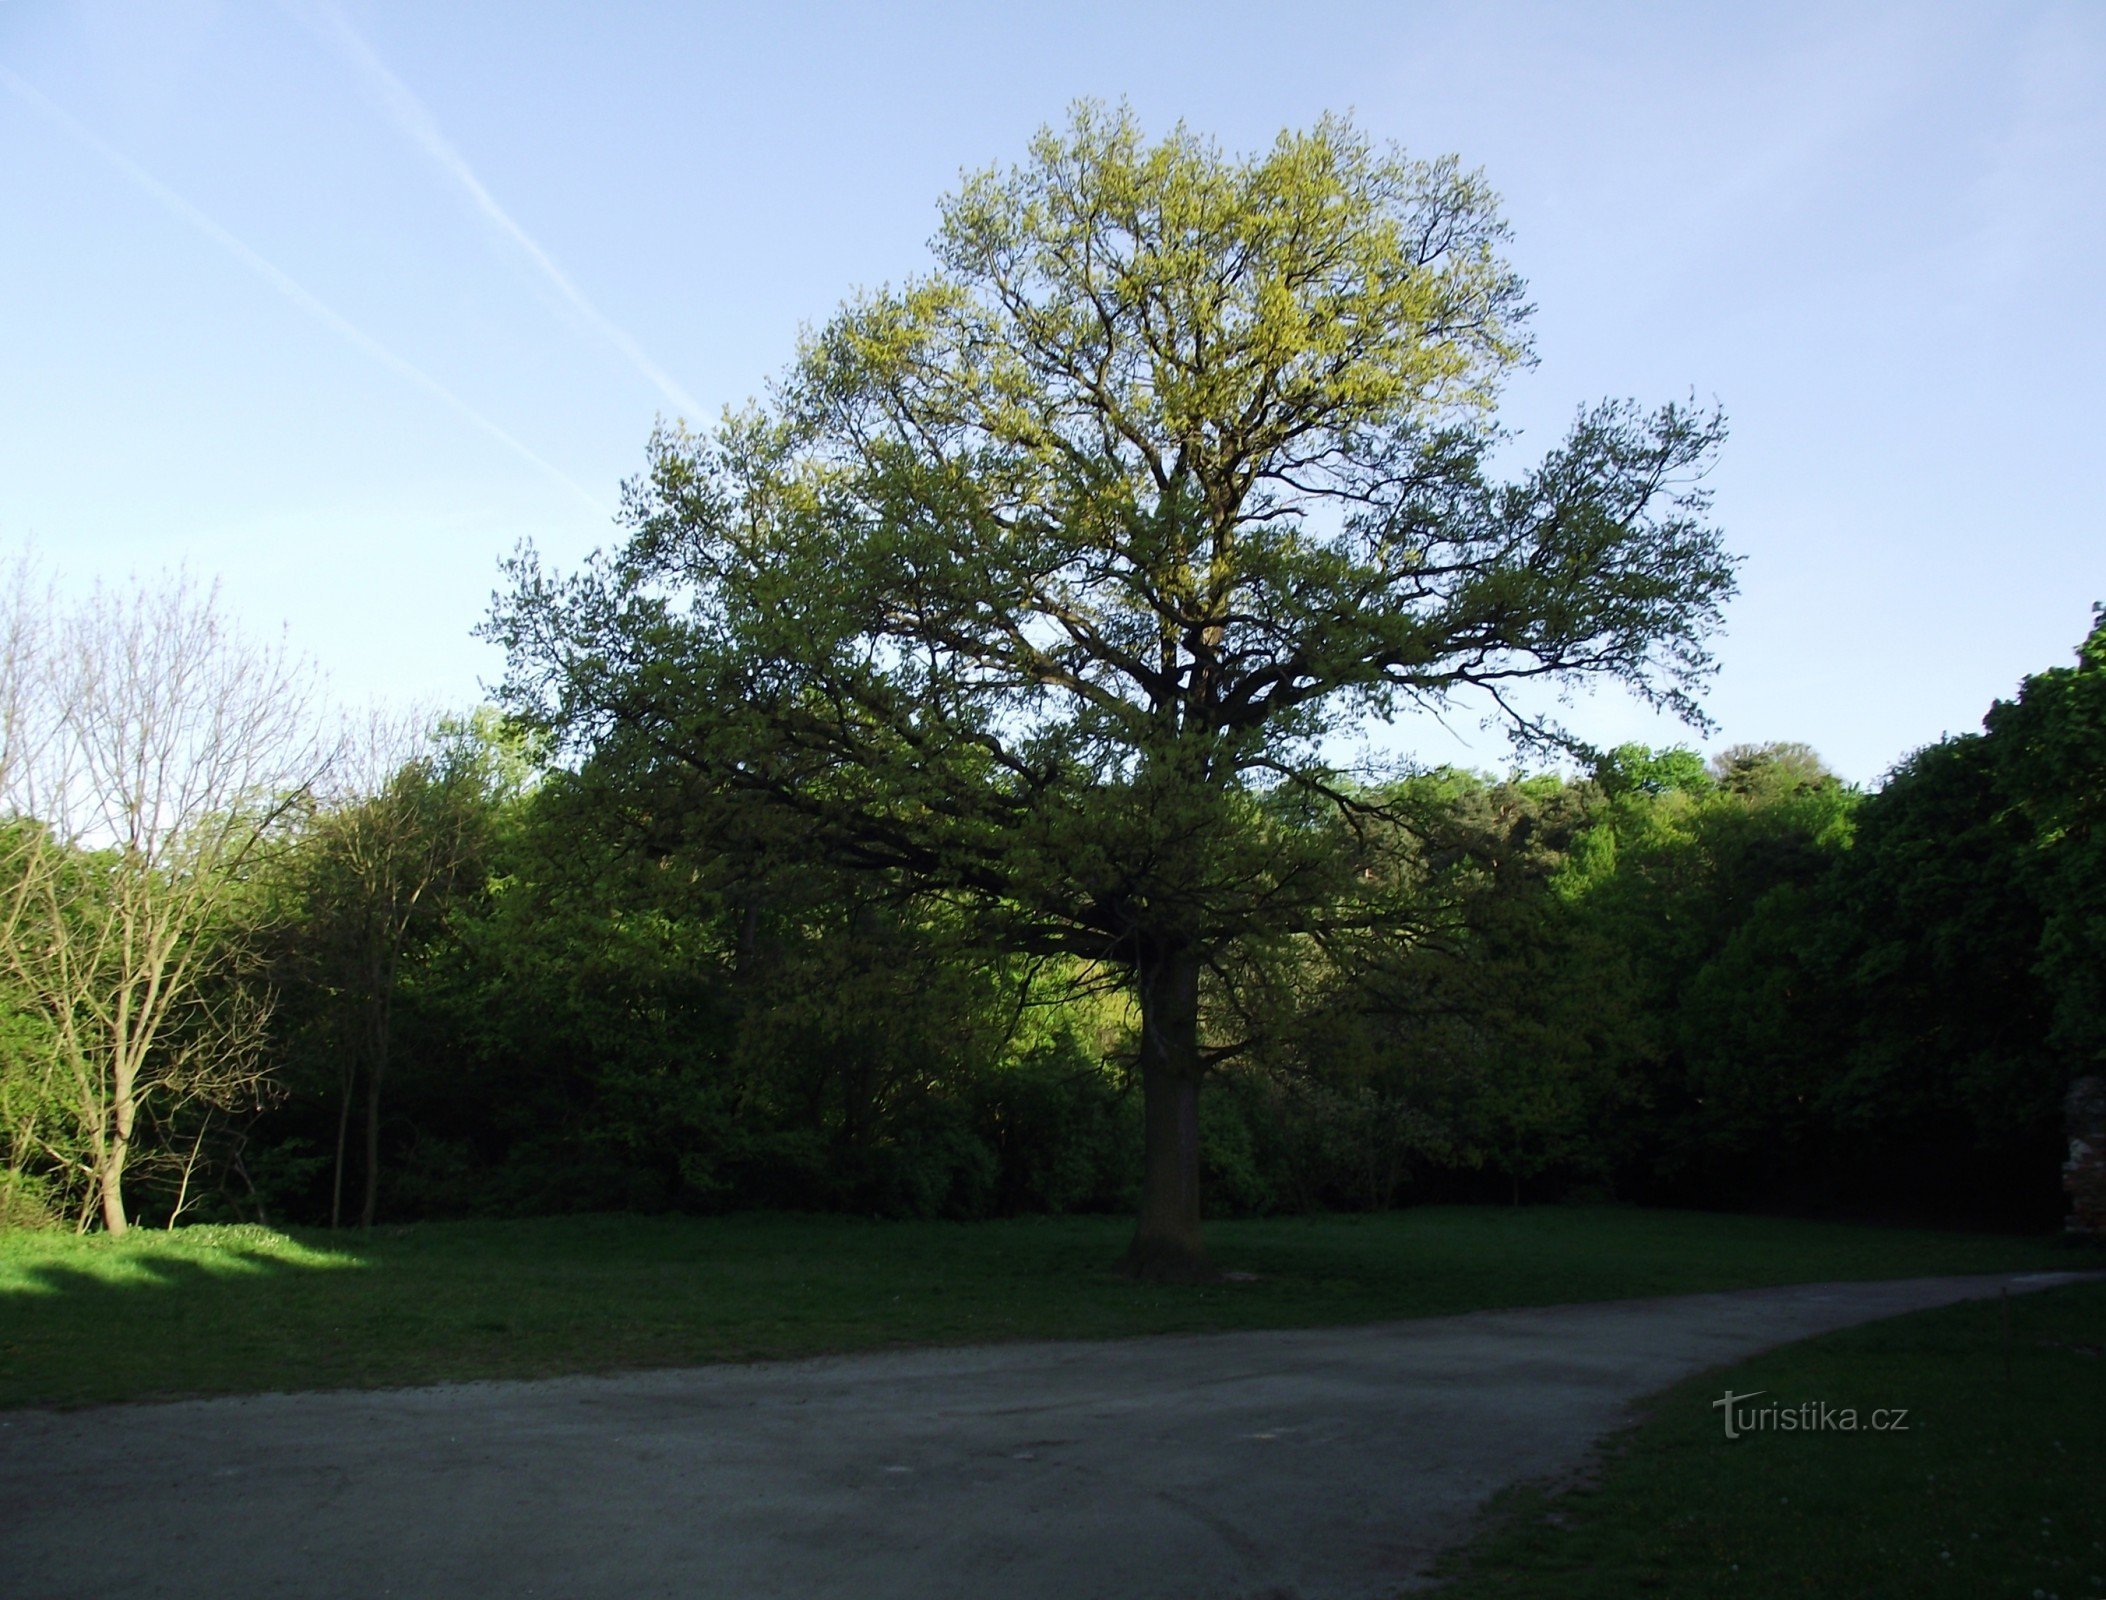 ボスコヴィツェ – シュテパンチャの結婚式の樫の木